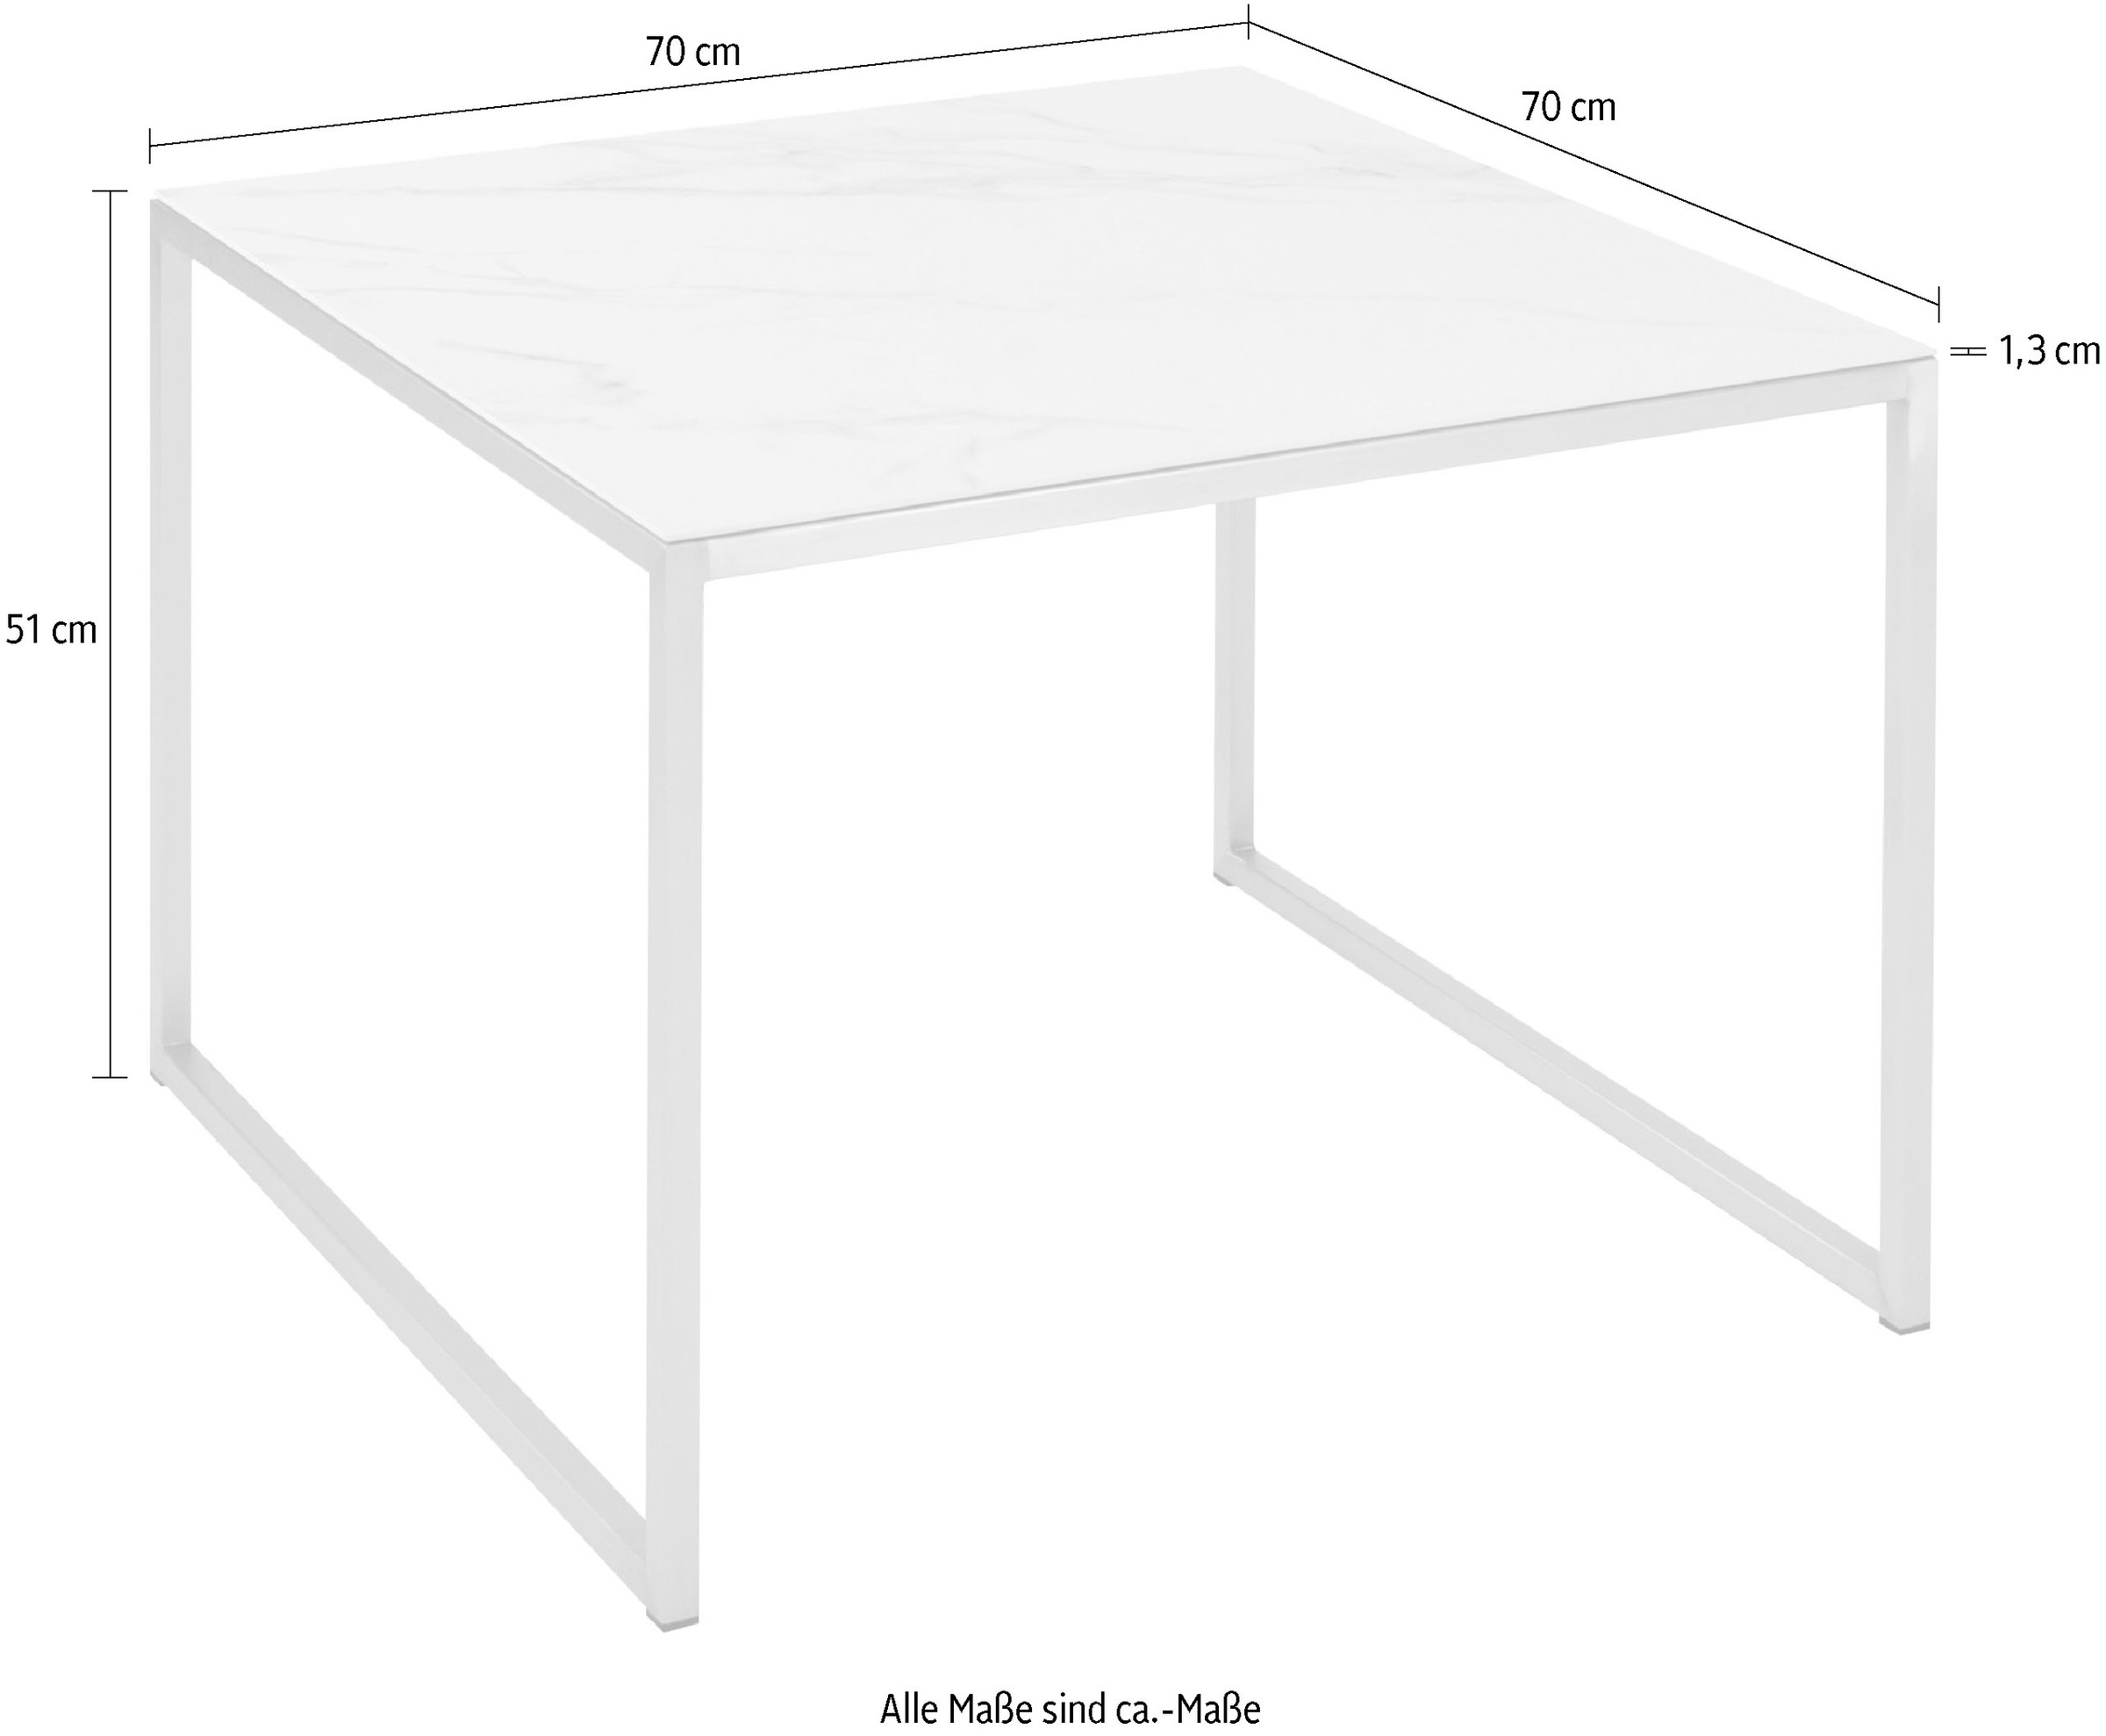 Möbel hochwertiger aus Henke Keramik Tischplatte Couchtisch, | BAUR bestellen